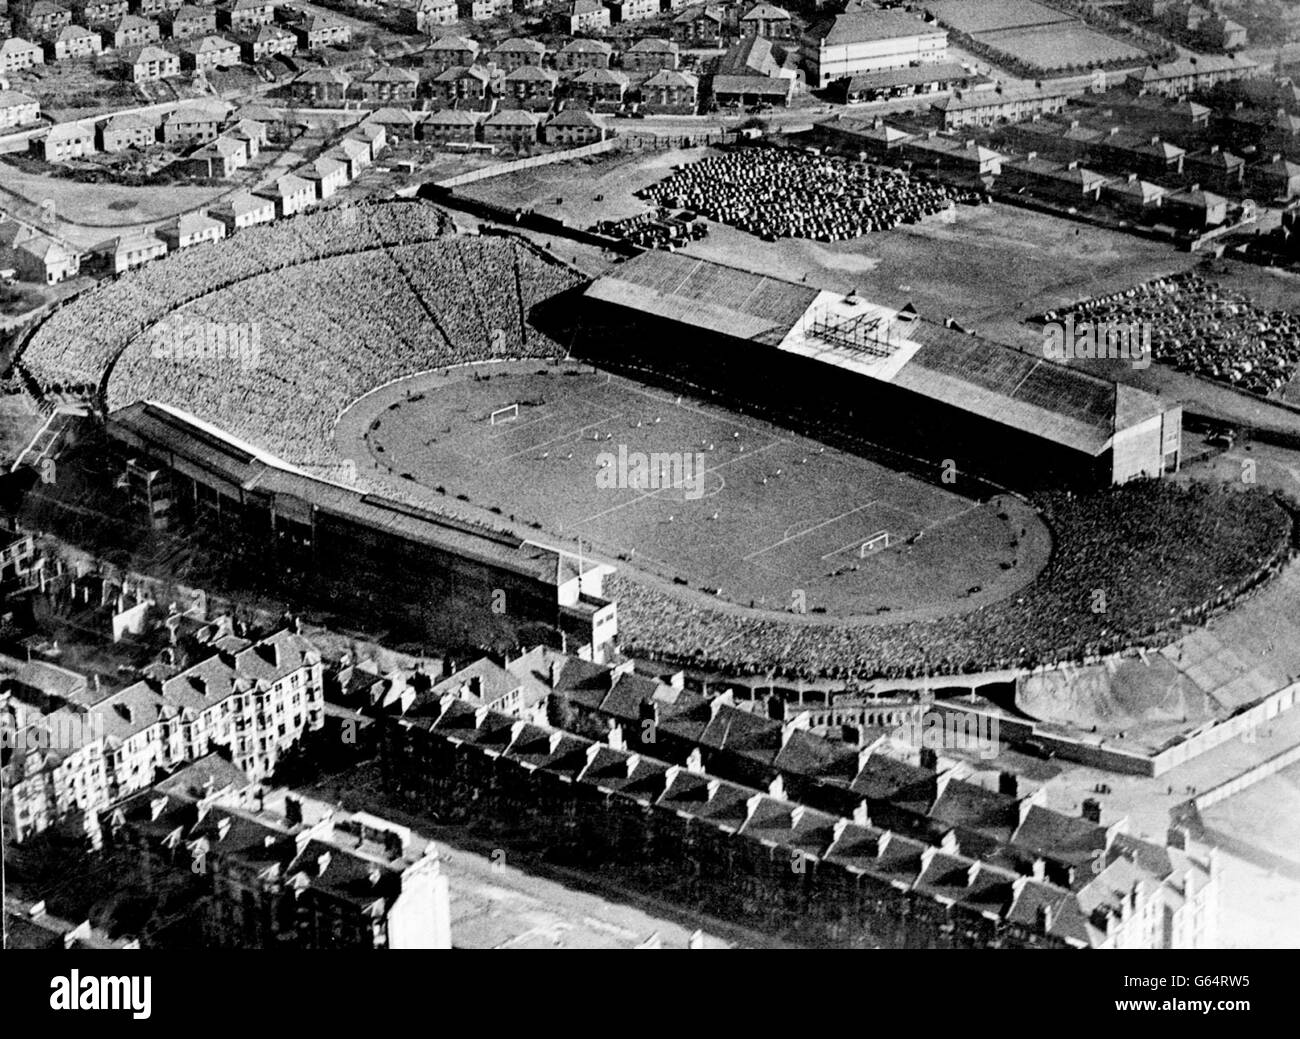 Eine Luftaufnahme des Hampden Park, Glasgow, während des Spiels zwischen Schottland und England. Schottland schlug England mit einem Tor. Stockfoto